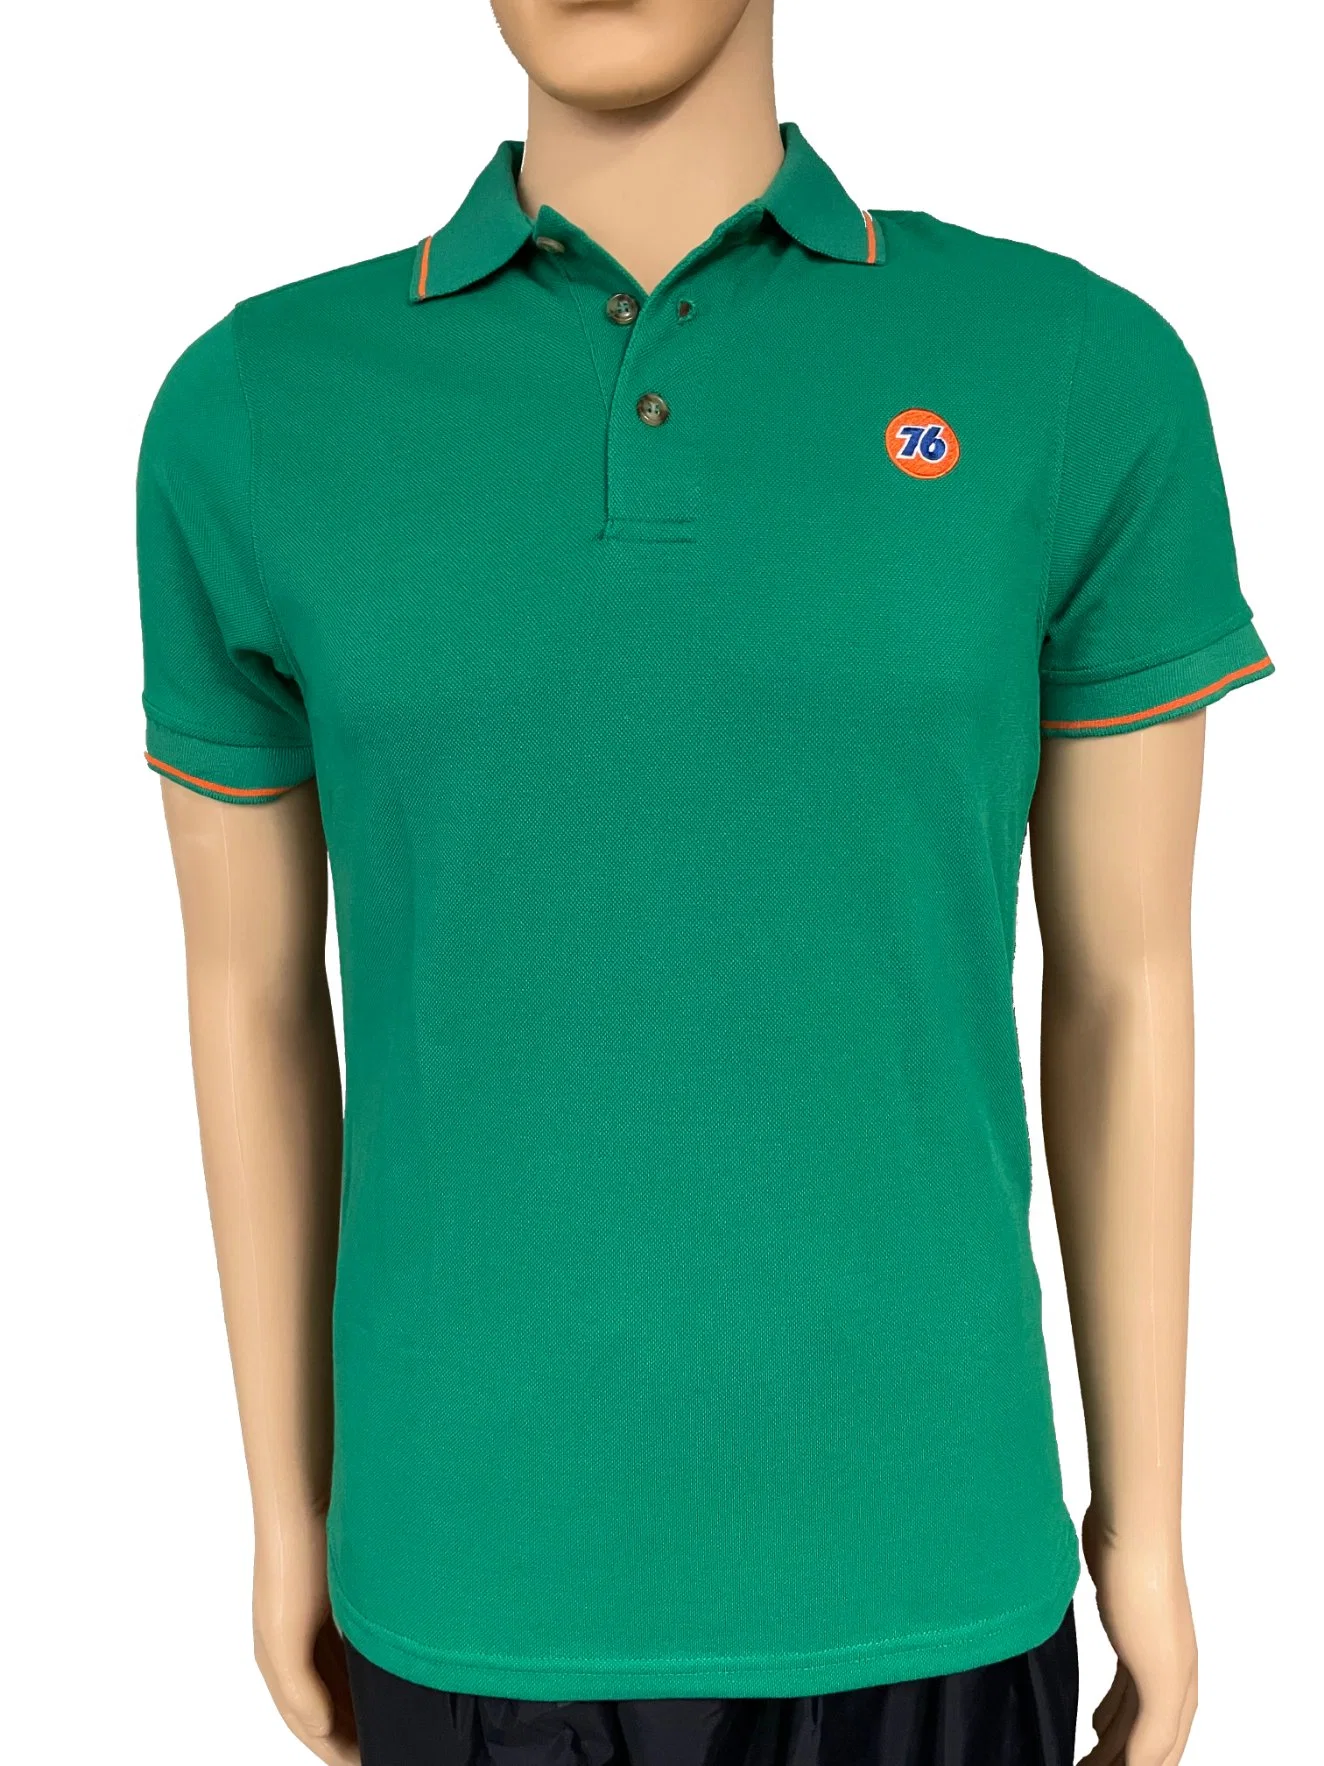 Red Golf Polo Shirts Custom Embroidery Man Tshirt